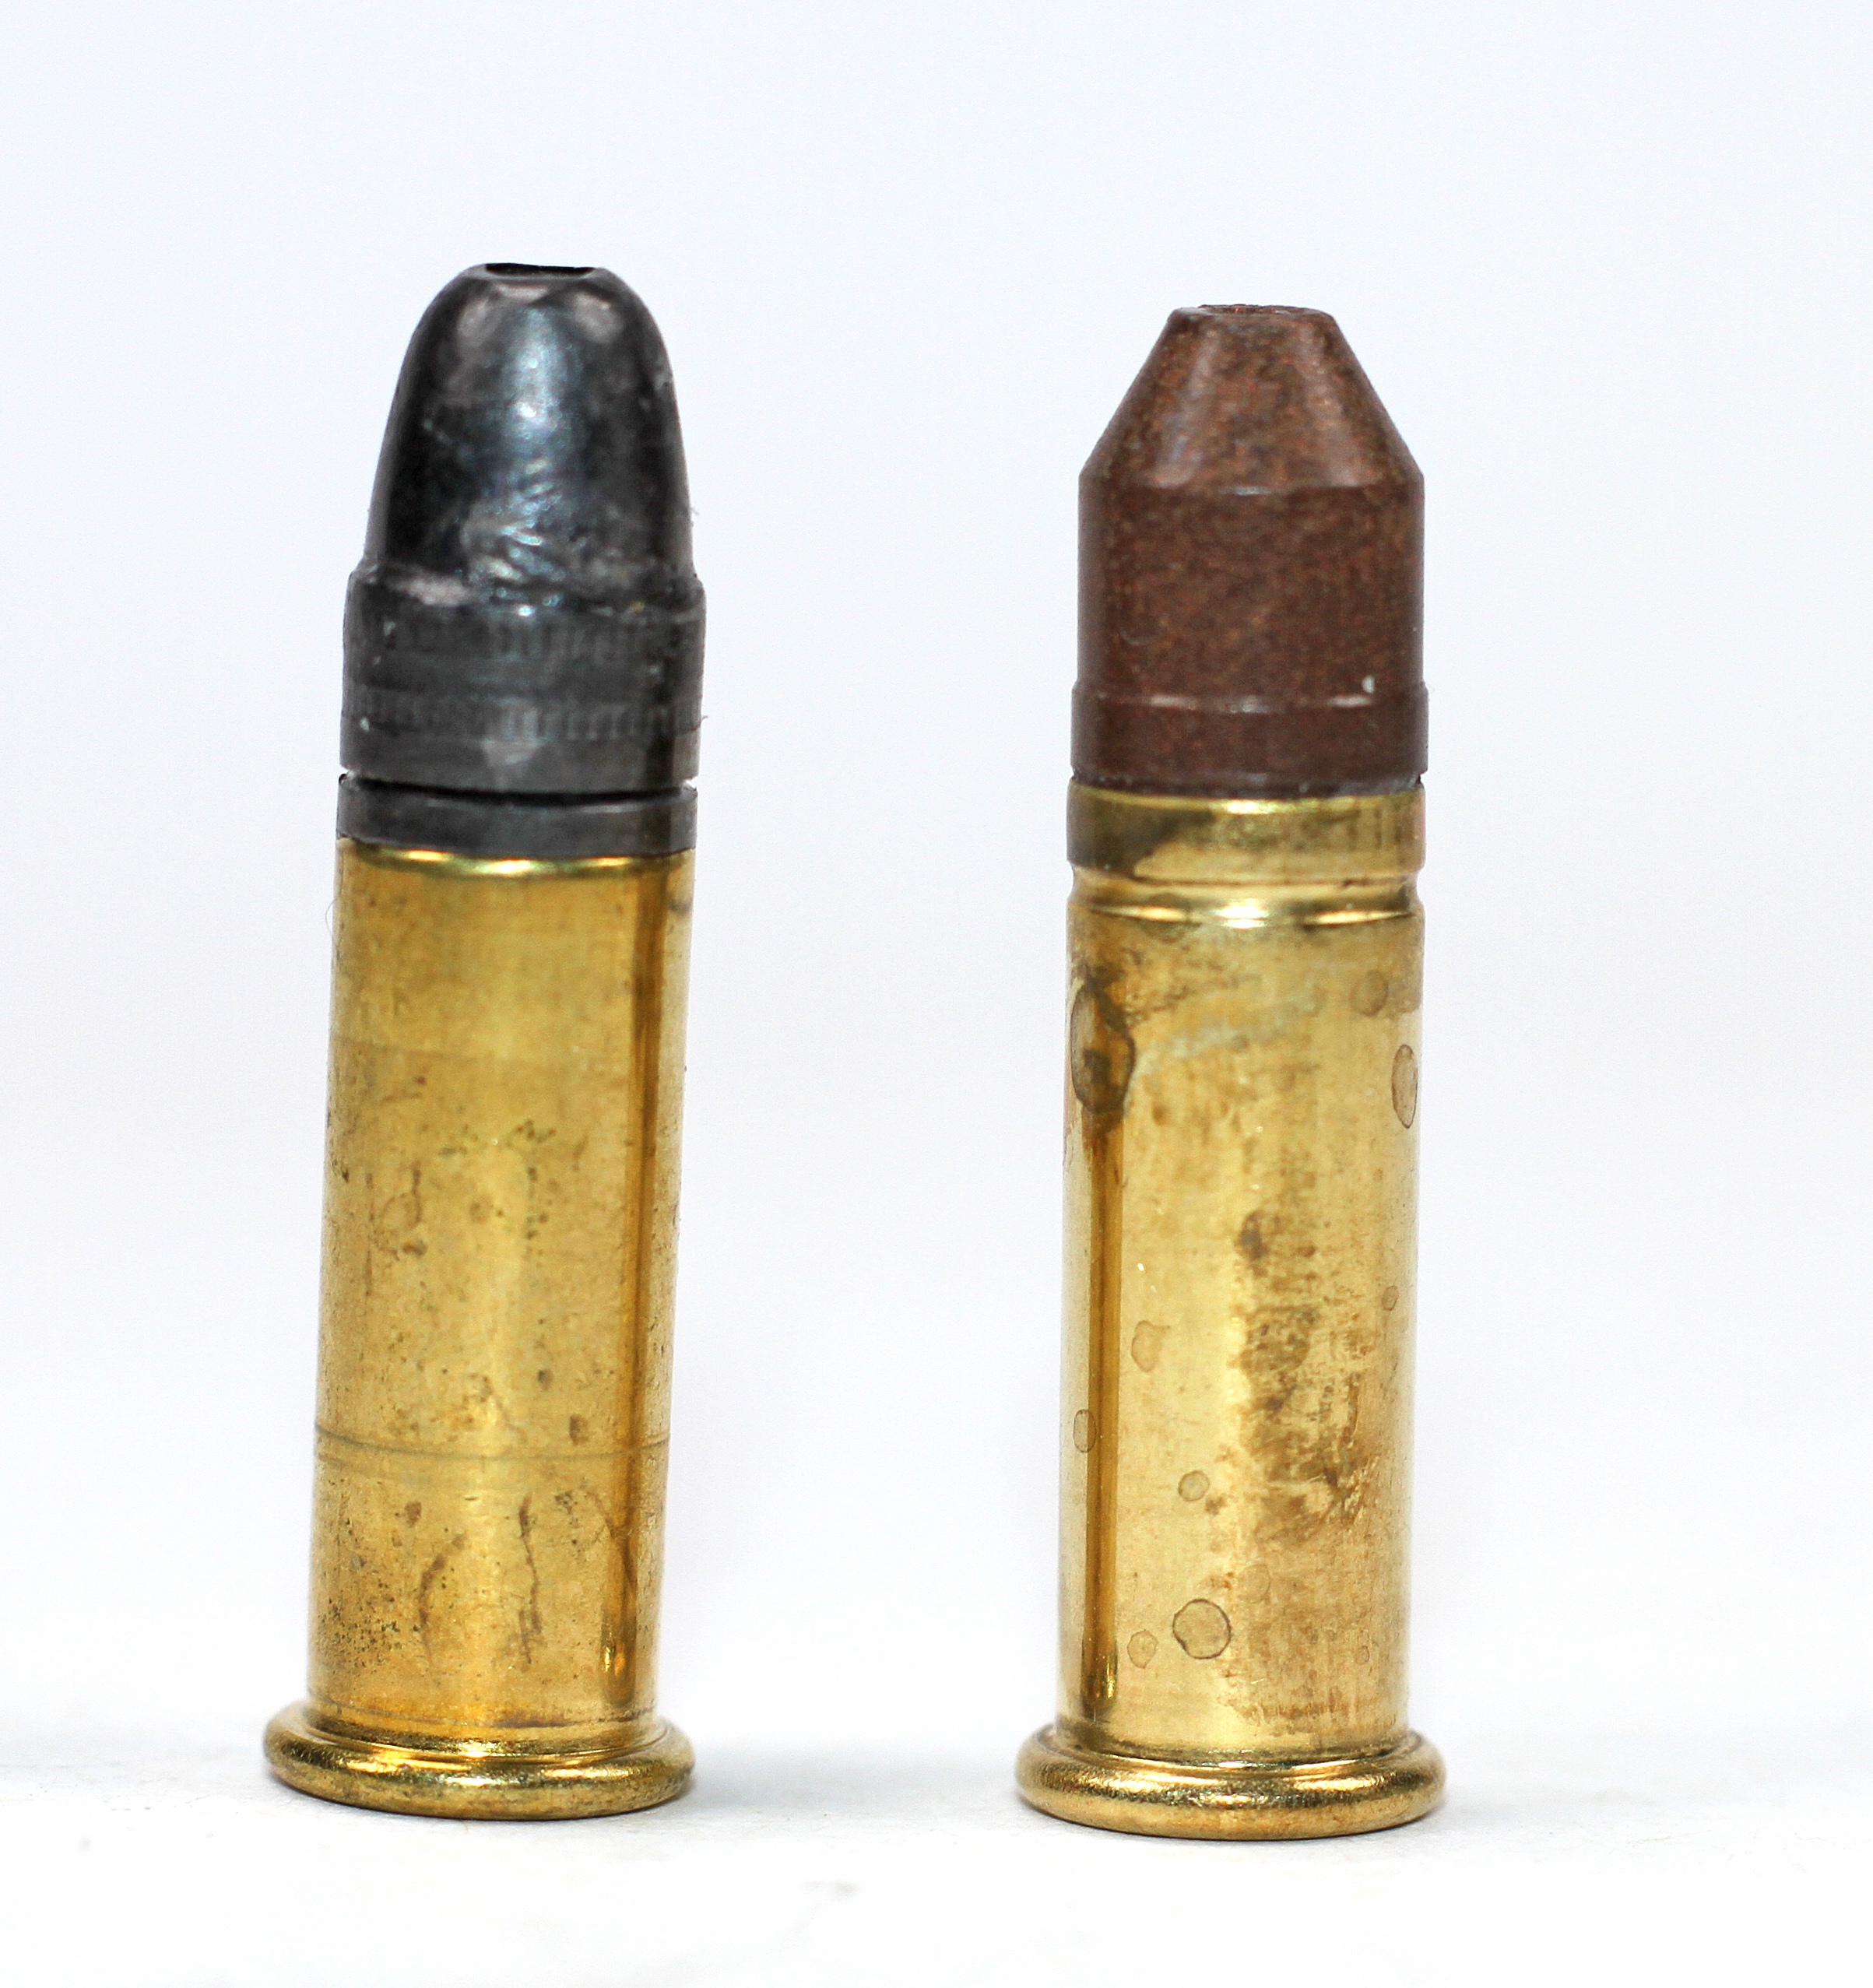 lead-free bullets